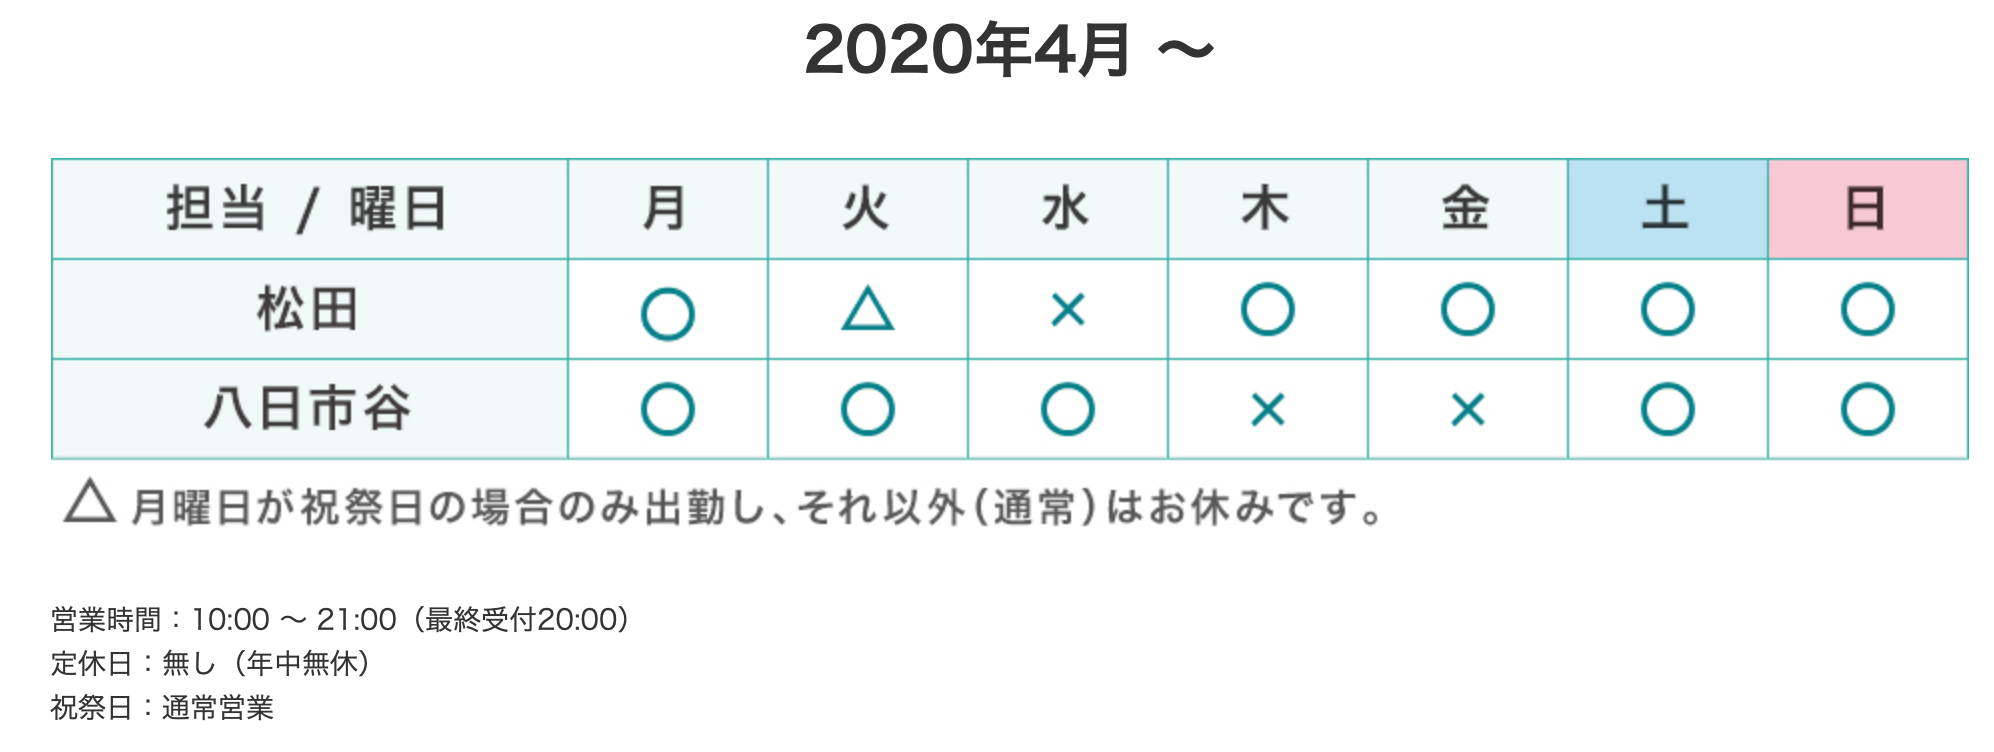 勤務表202004〜 03